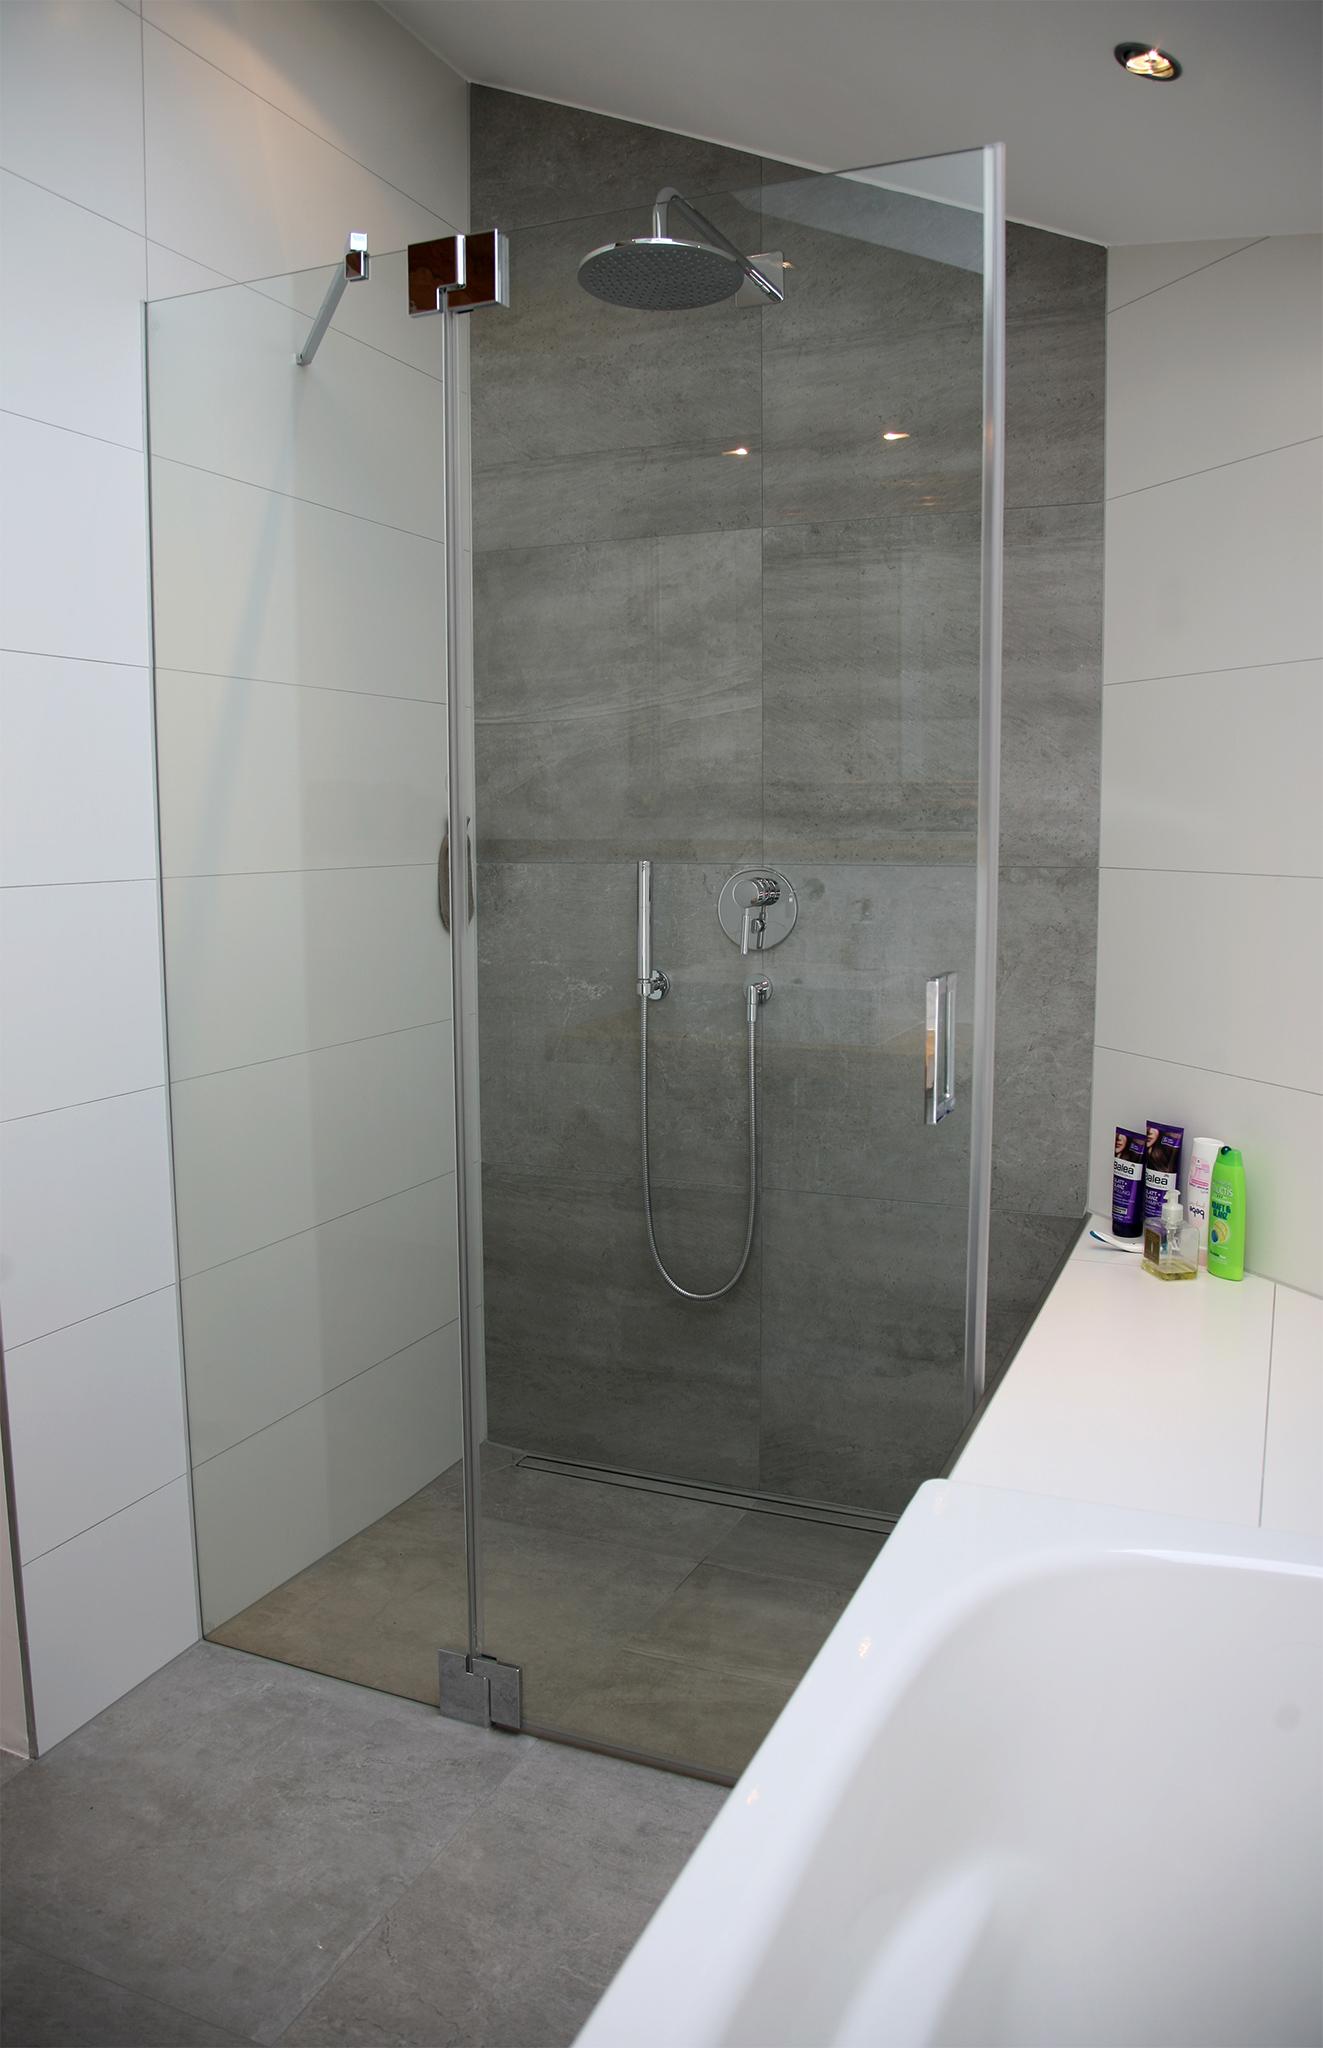 Komfortabel: Die bodenebene Dusche #dachschräge #ebenerdigedusche #offenesbadezimmer ©HEIMWOHL GmbH